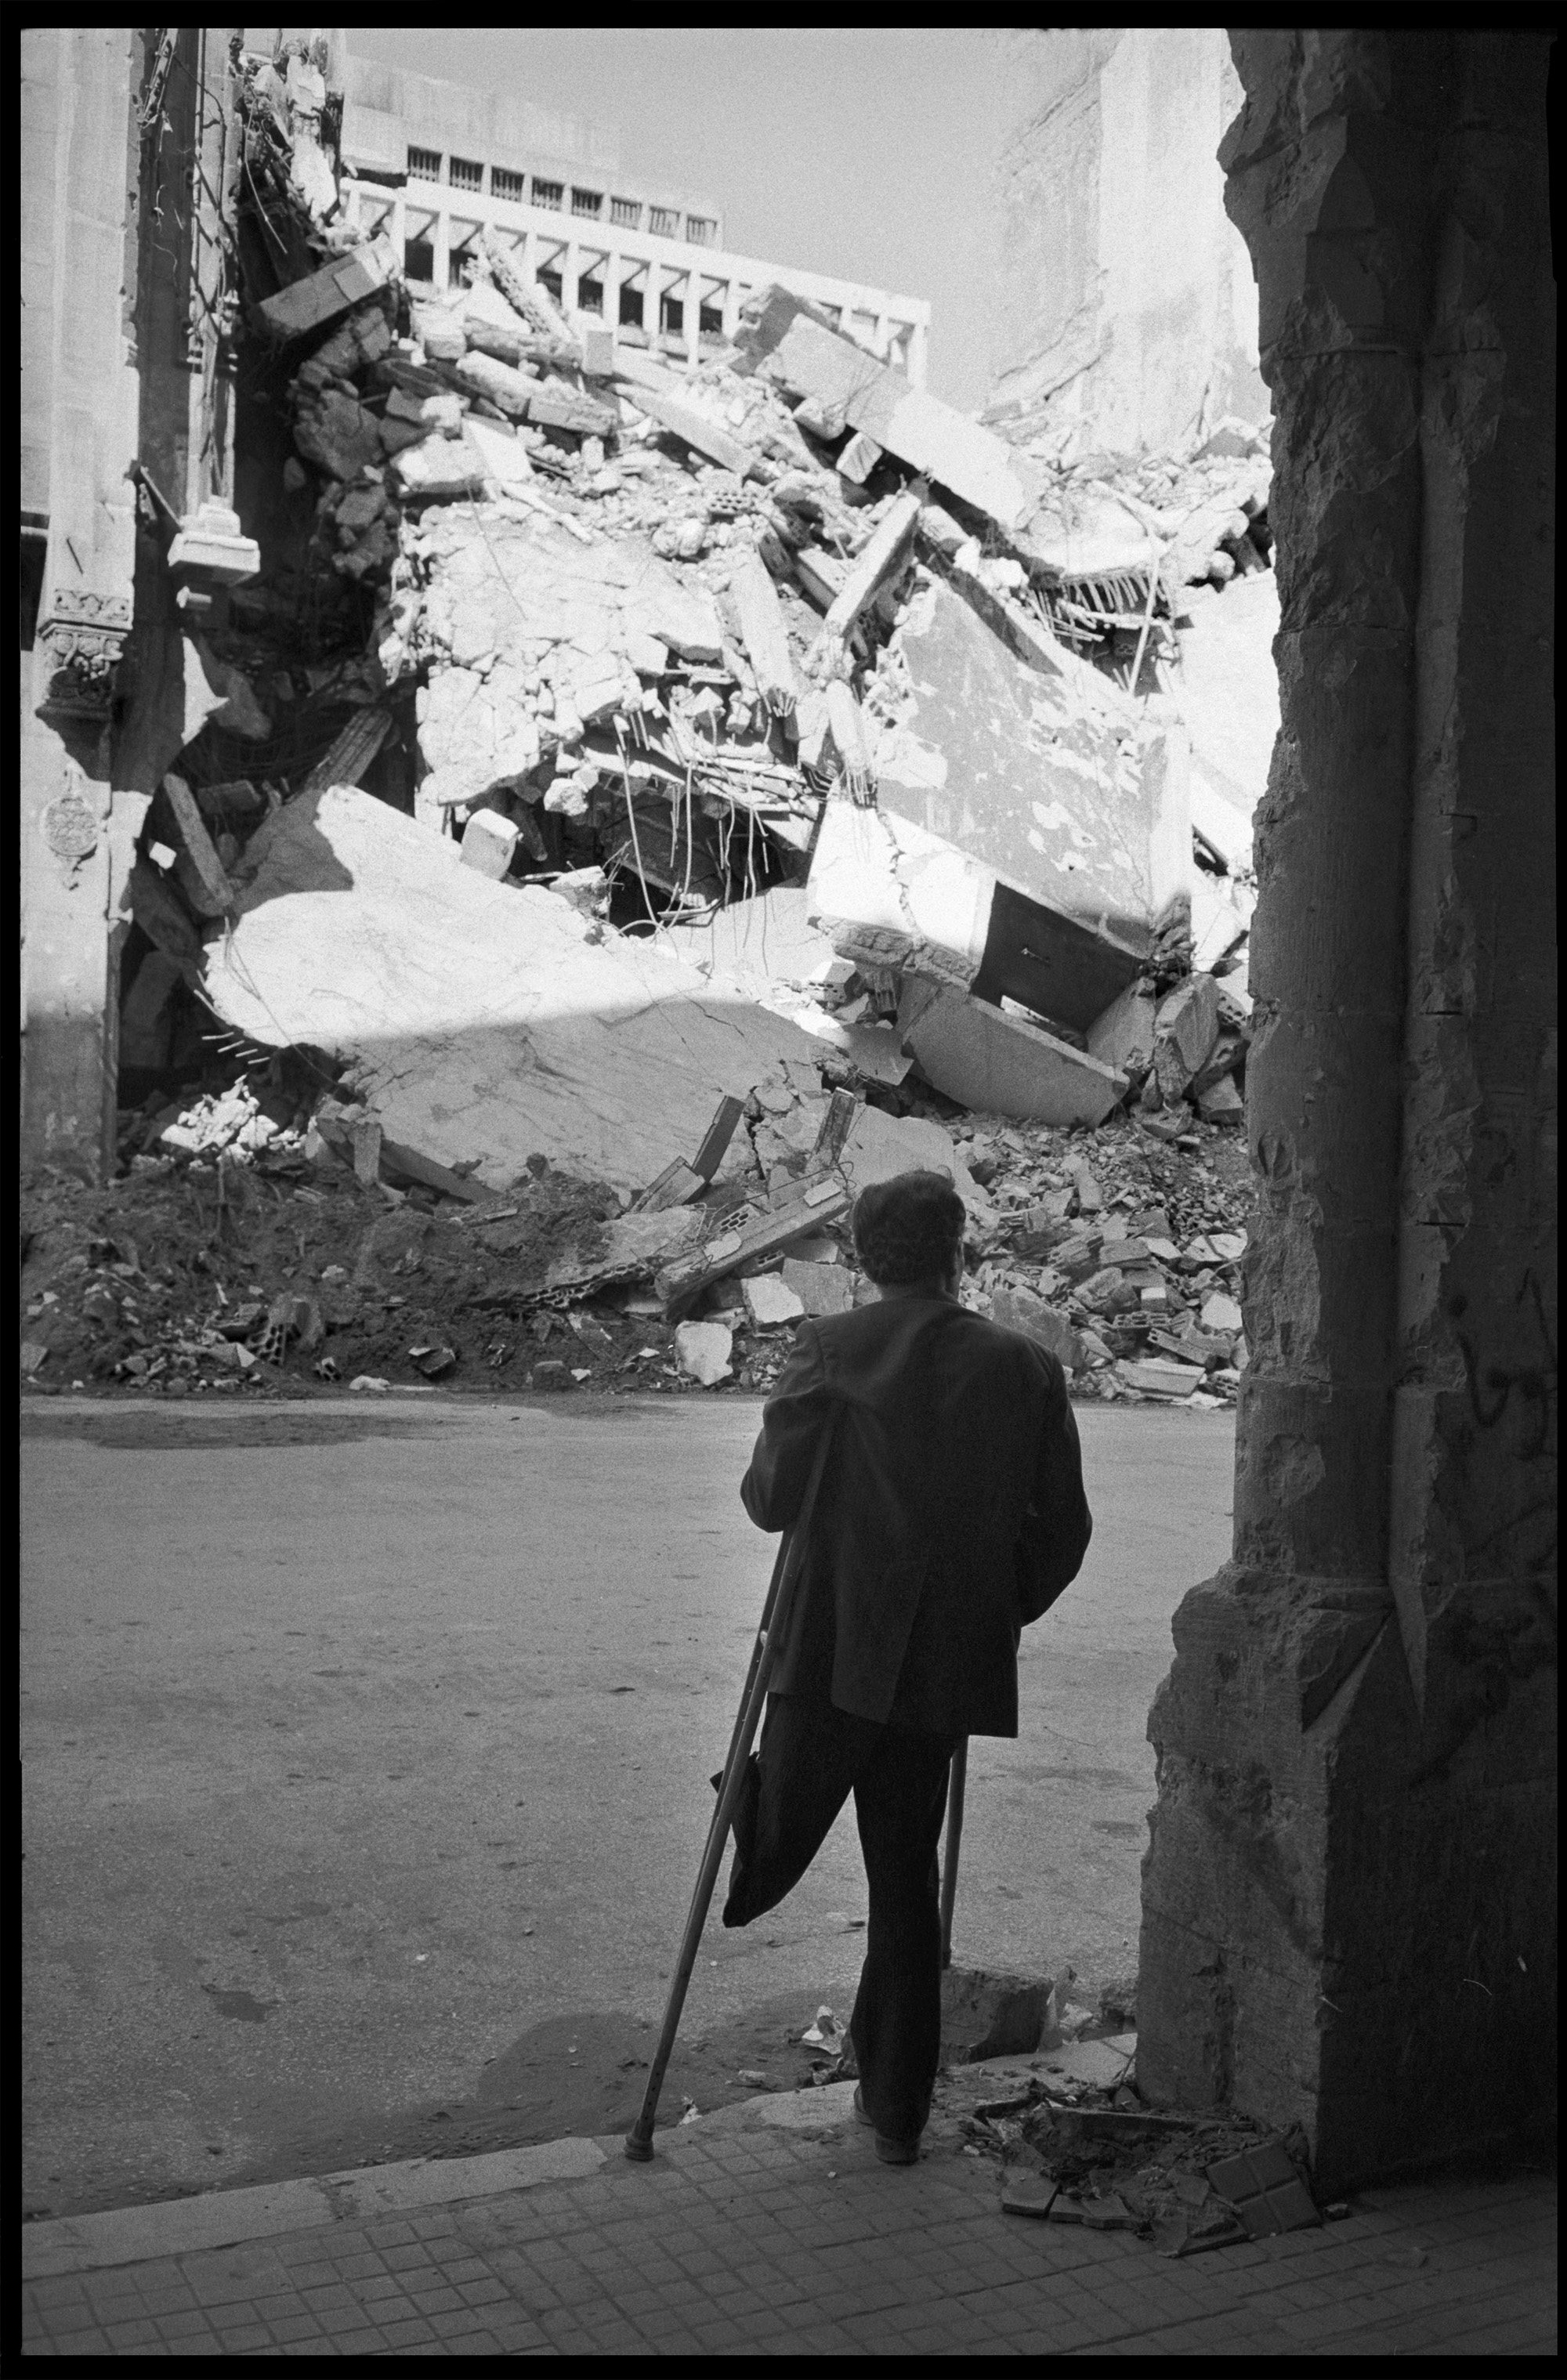 Beirut, Libanon, 1977. Ein Mann mit einem amputierten Bein vor einem zerbombten Gebäude. 